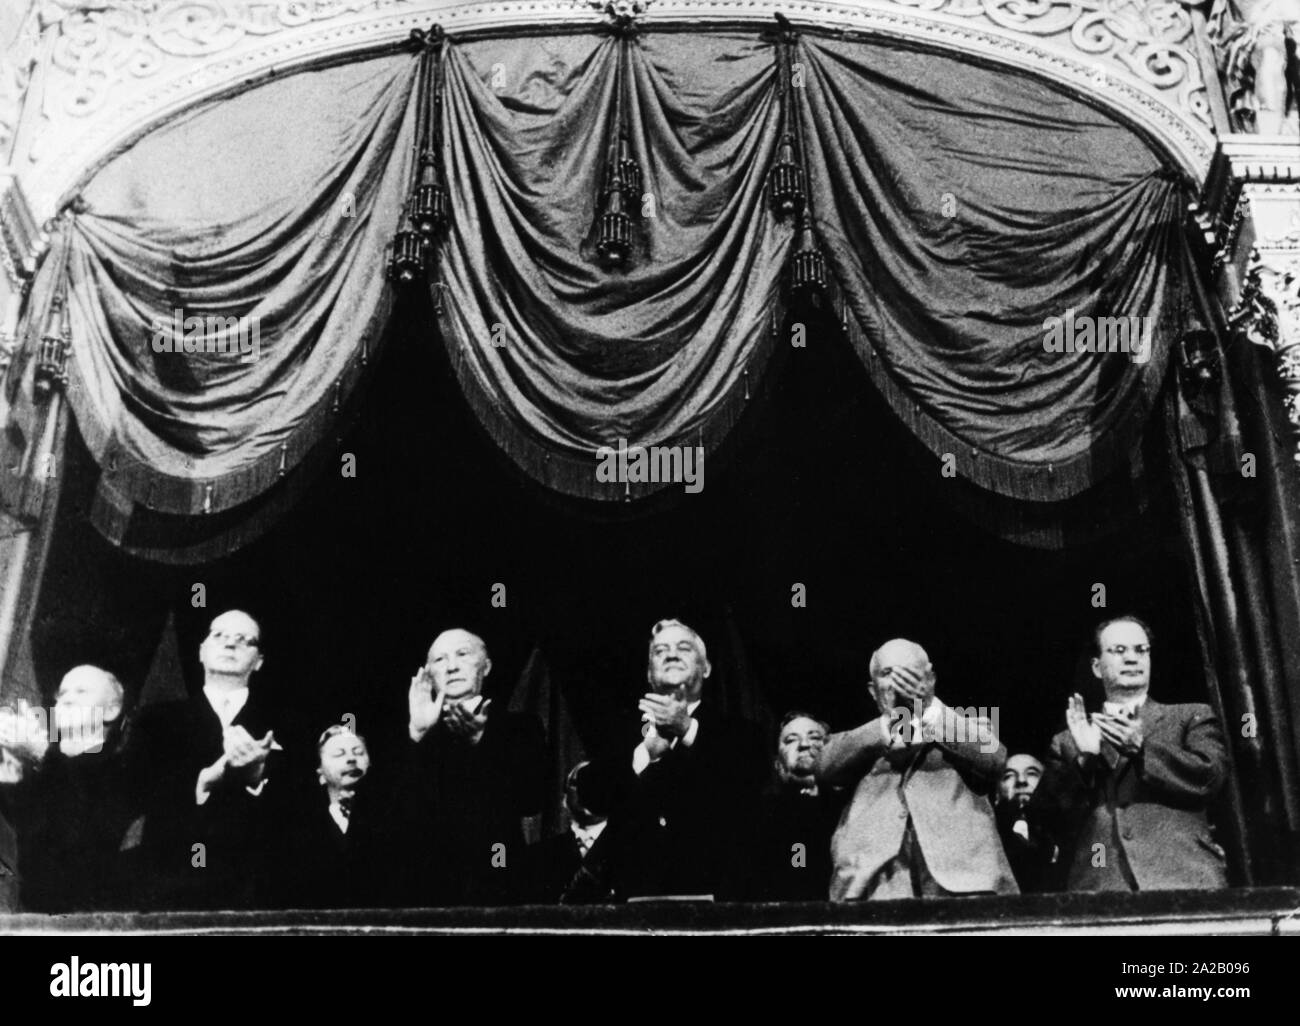 Le chancelier Konrad Adenauer en visite d'État à Moscou dans la boîte du Tsar au Théâtre du Bolchoï. De gauche à droite : Viatcheslav Mikhaïlovitch Molotov (le Ministre russe des Affaires étrangères), Heinrich von Brentano (Ministre des affaires étrangères), Kurt Georg Kiesinger (CSU) de la politique, légèrement couvert, Adenauer, Nikolaï Alexandrovitch Boulganine (Premier Ministre de l'URSS), Carlo Schmid (SPD, légèrement dans l'ombre), Nikita Sergueïevitch Khrouchtchev (chef de parti de l'UCA, mains devant le visage) et Karl Arnold (premier ministre de Rhénanie du Nord-Westphalie, deuxième rangée) et un inconnu. Banque D'Images